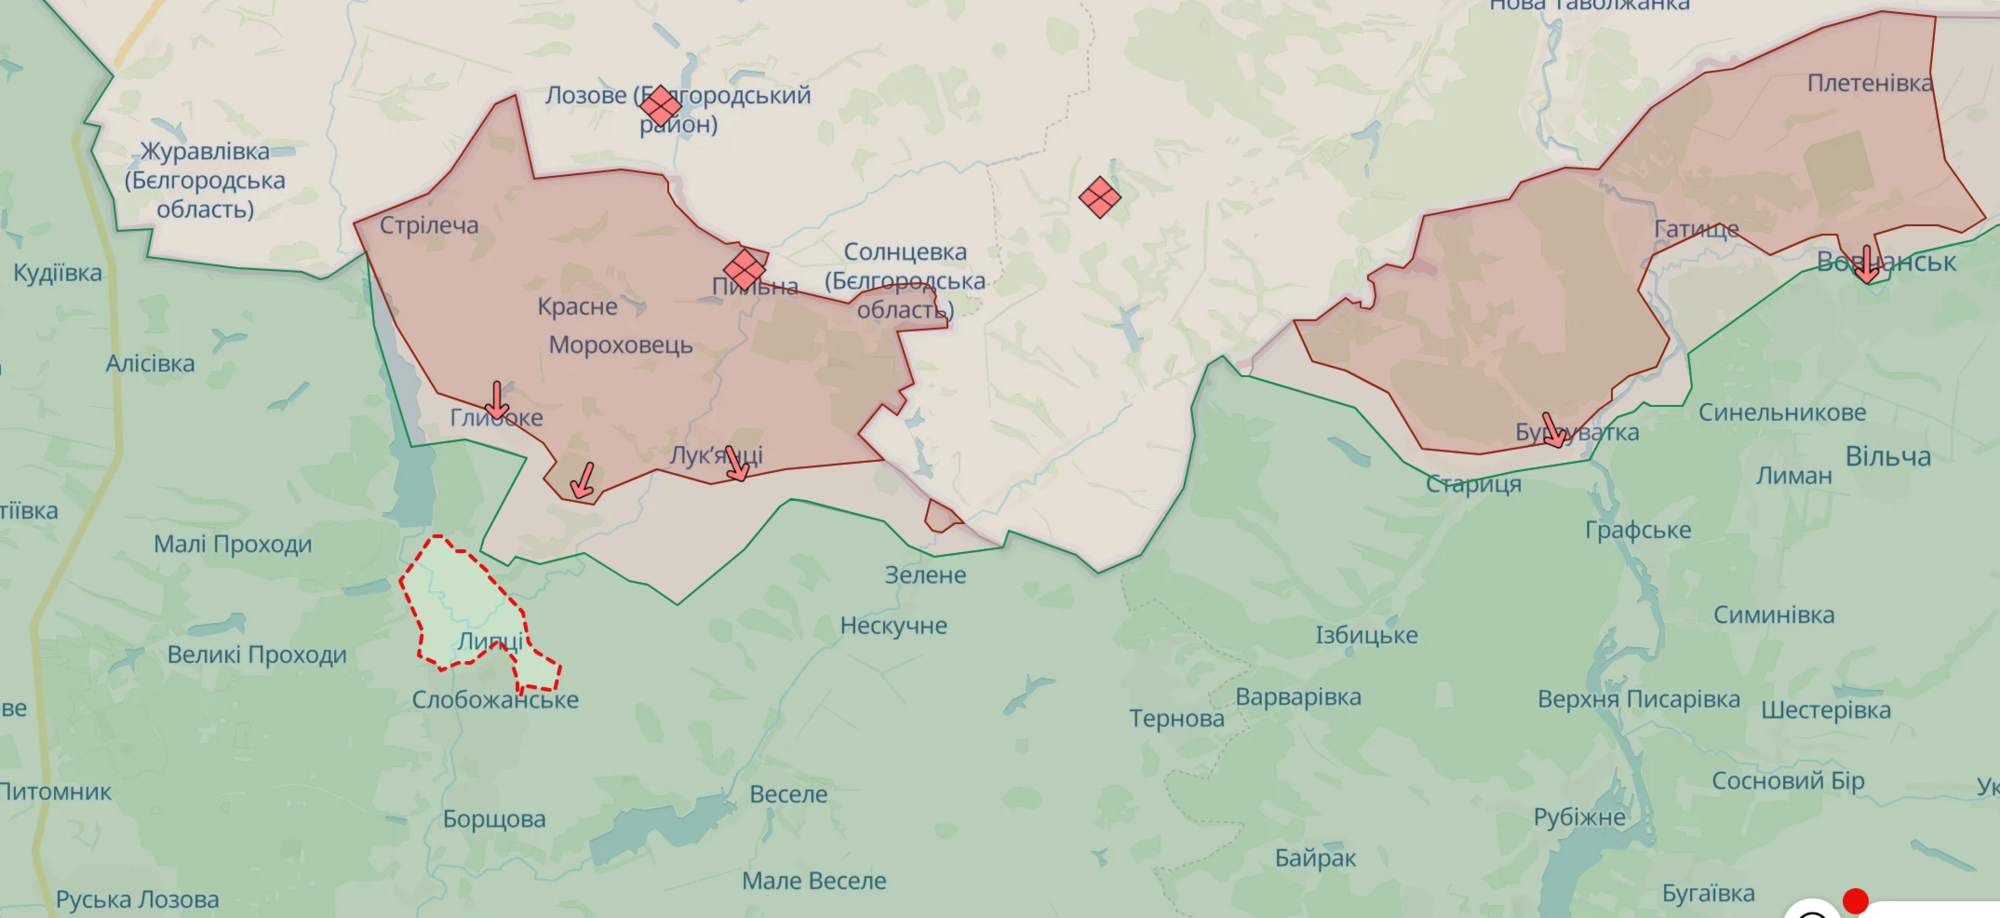 Ситуация в Липцах Харьковской области контролируемая, на Покровском направлении враг провел десятки атак – Генштаб